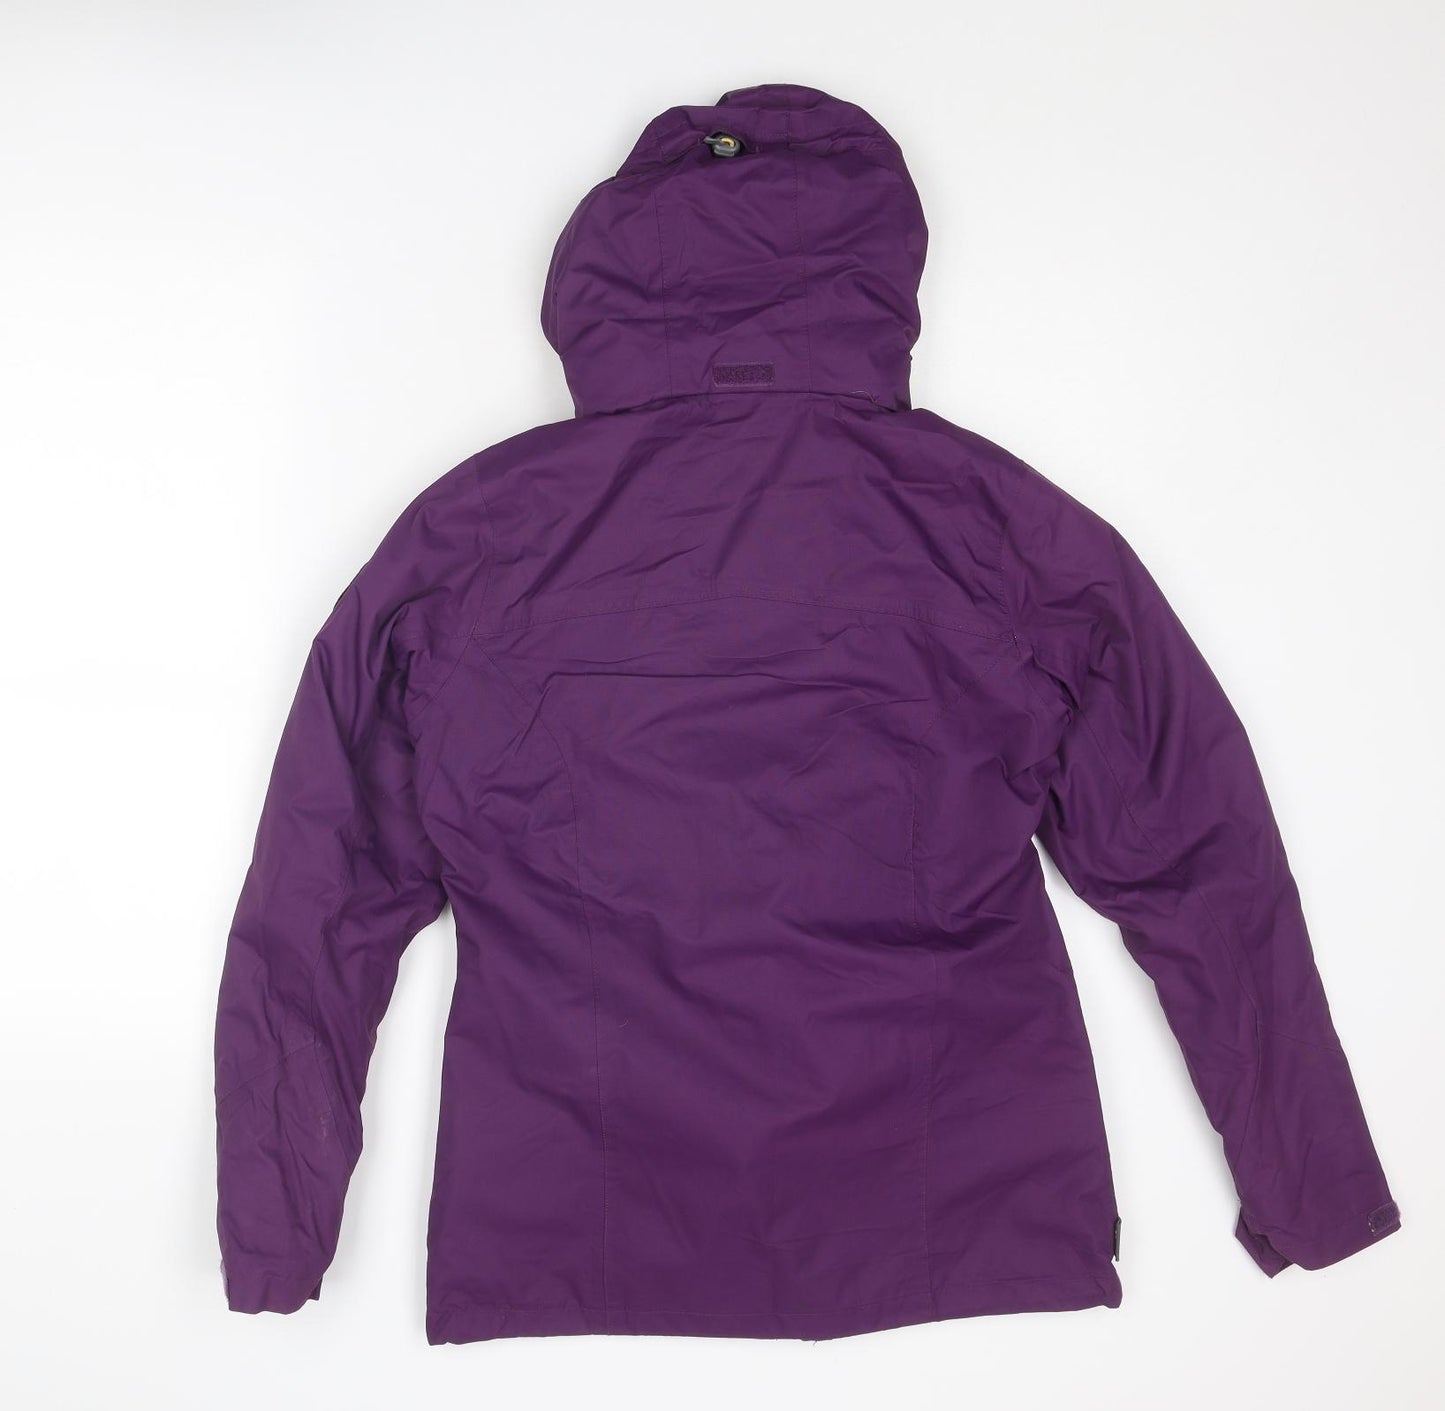 TOG24 Womens Purple Windbreaker Jacket Size 10 Zip